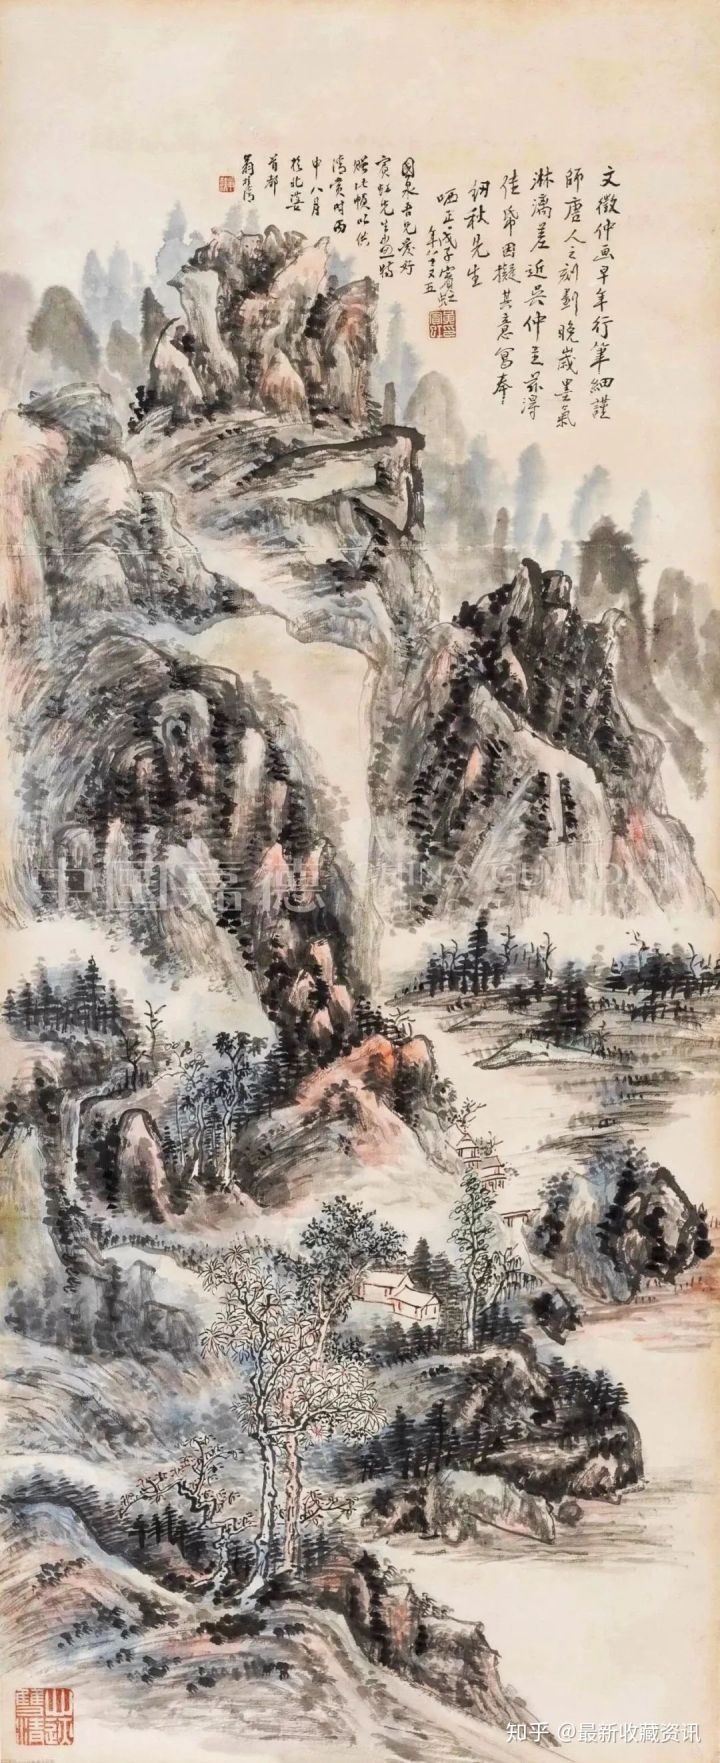 黄宾虹《致翁纫秋山水镜心画作》。
